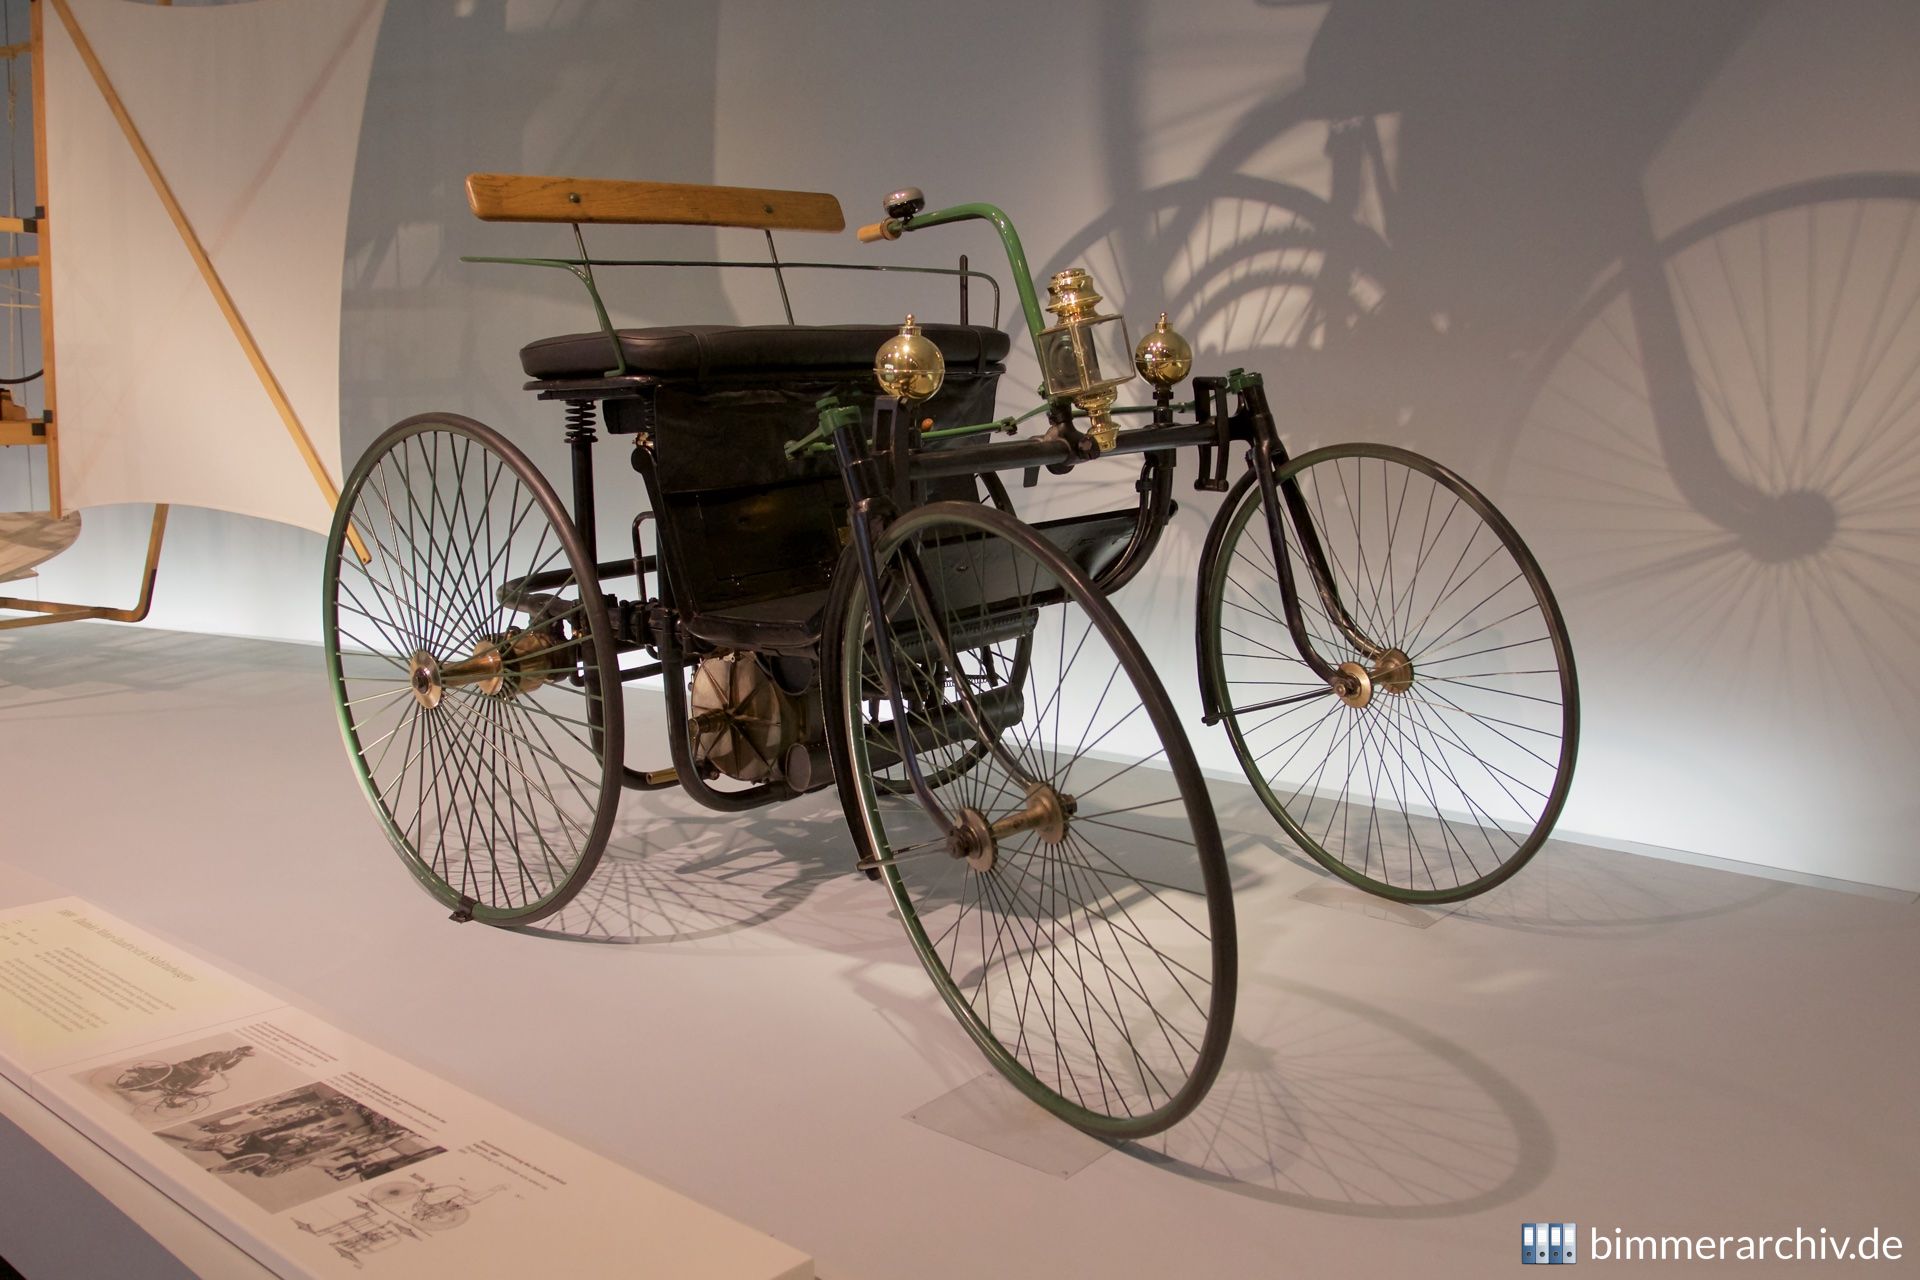 Daimler motorized quadricycle (1889)